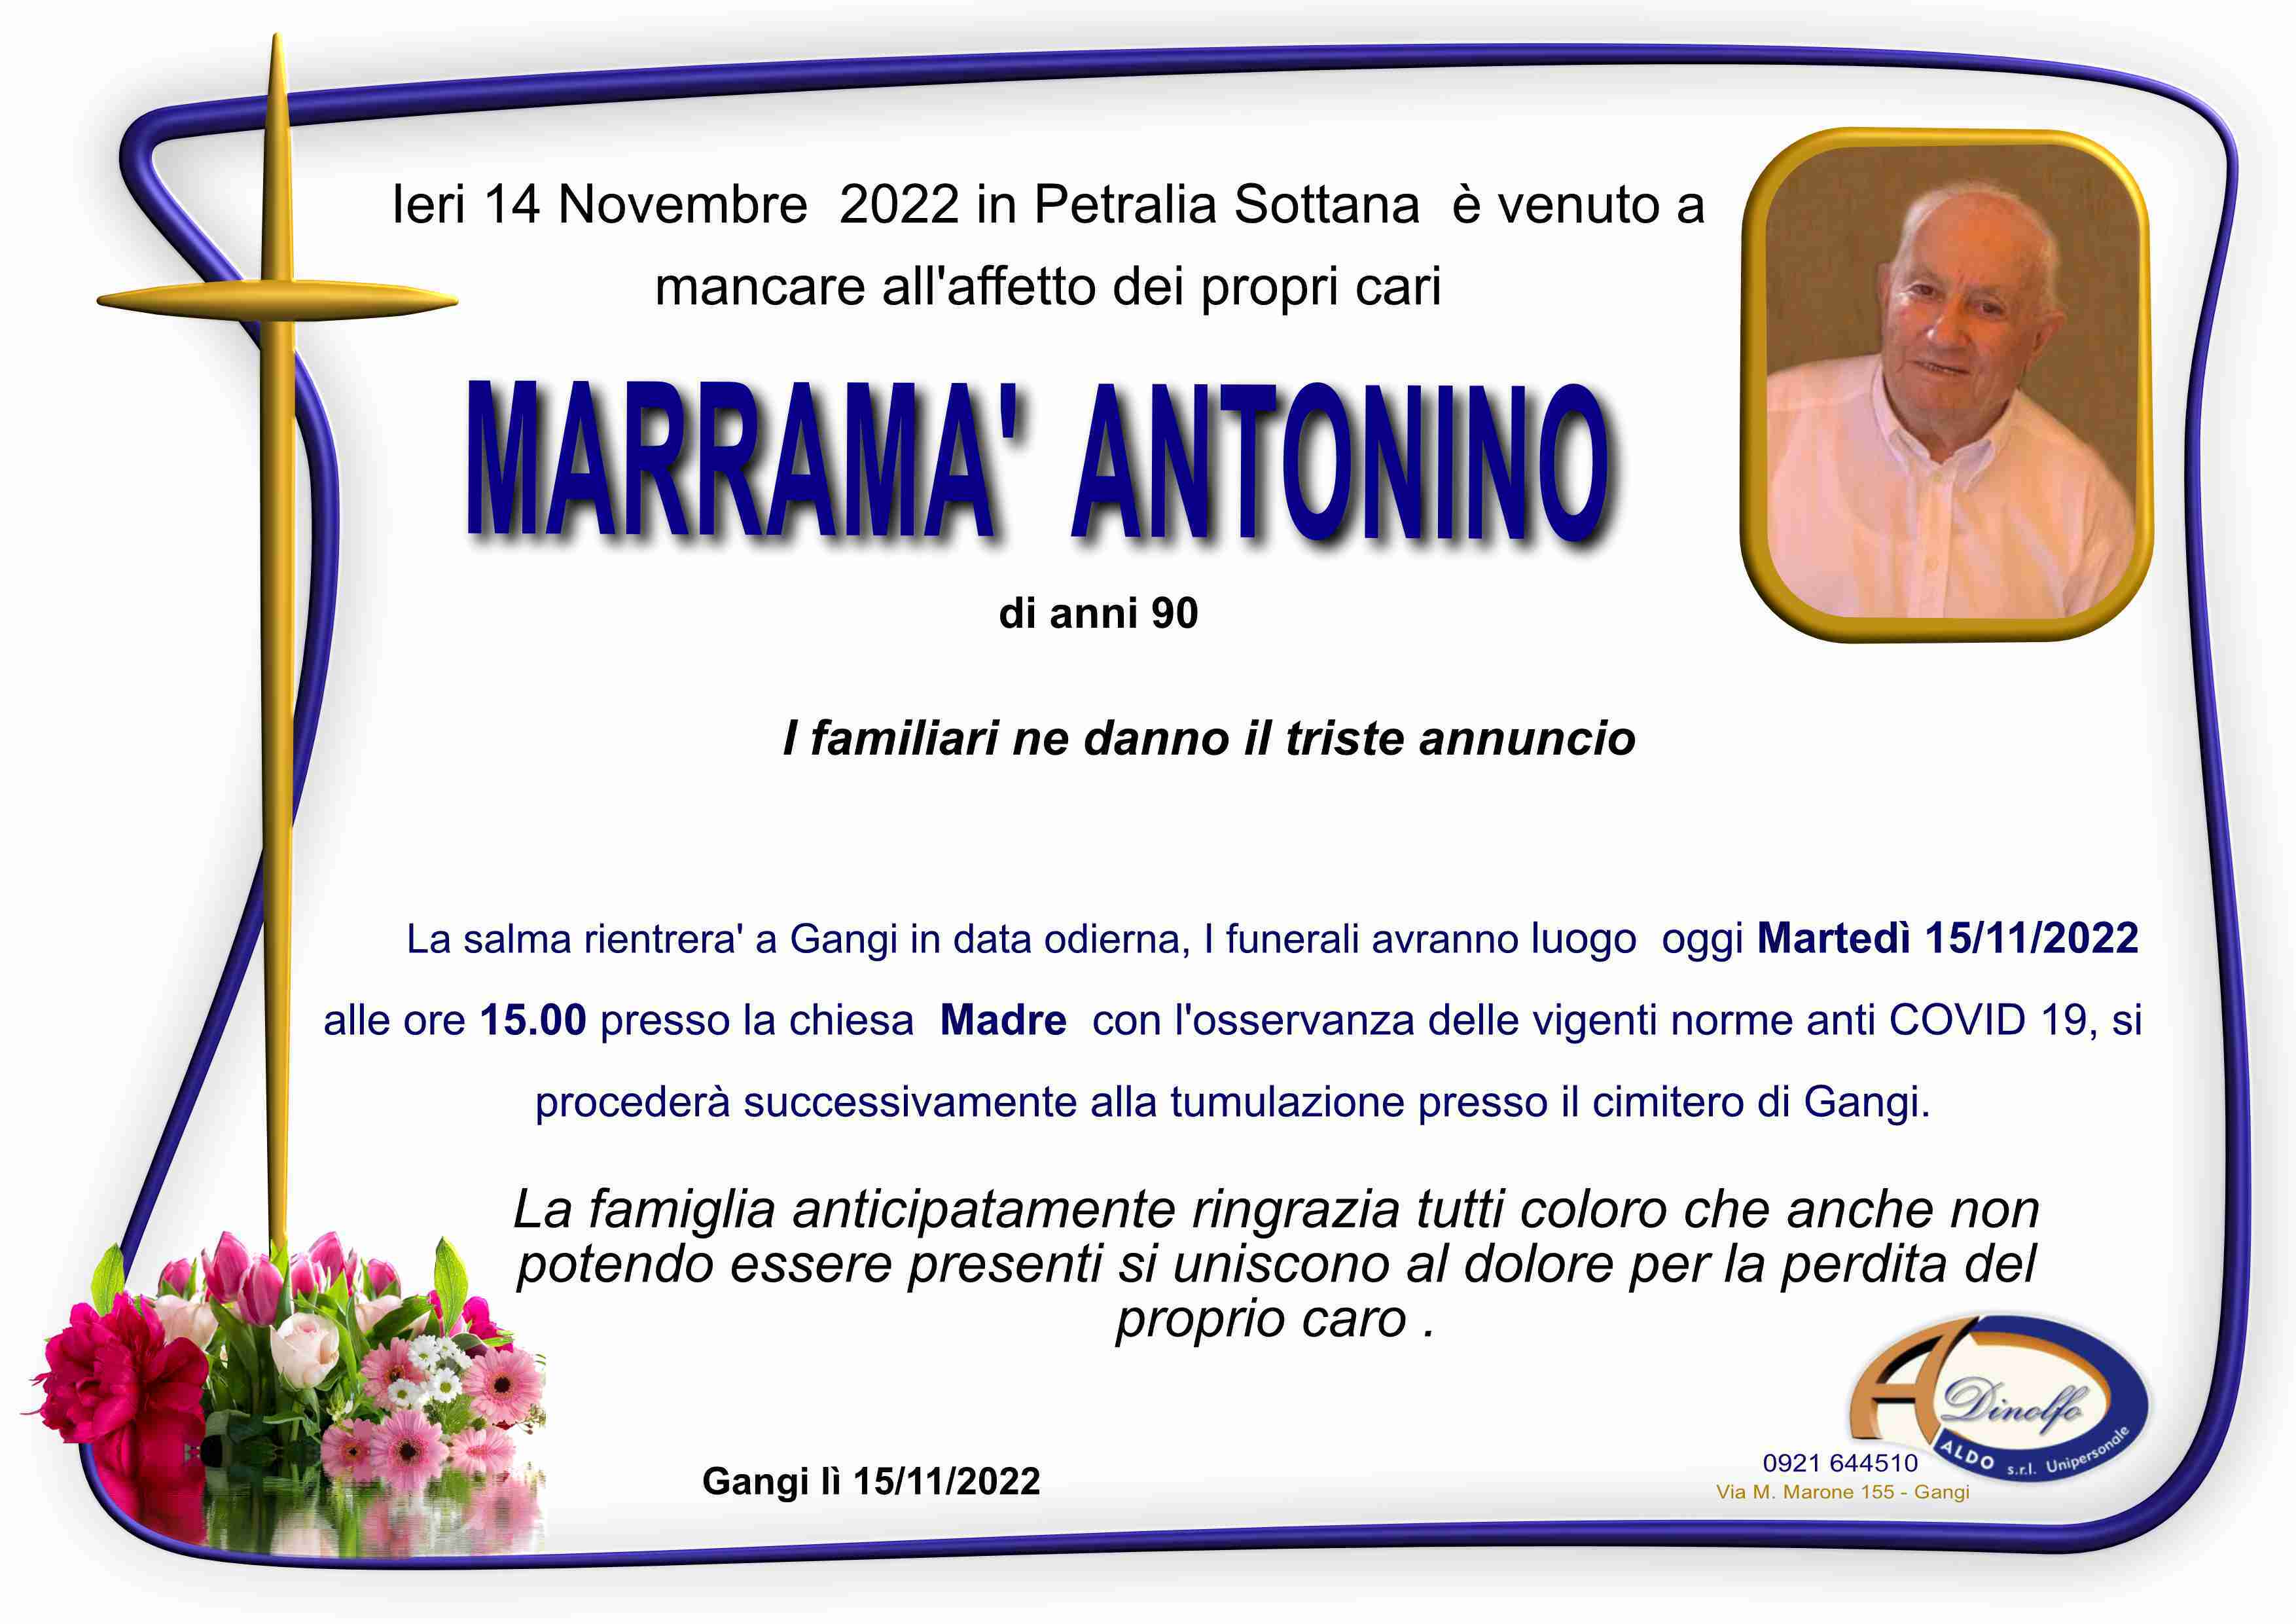 Antonino Marramà